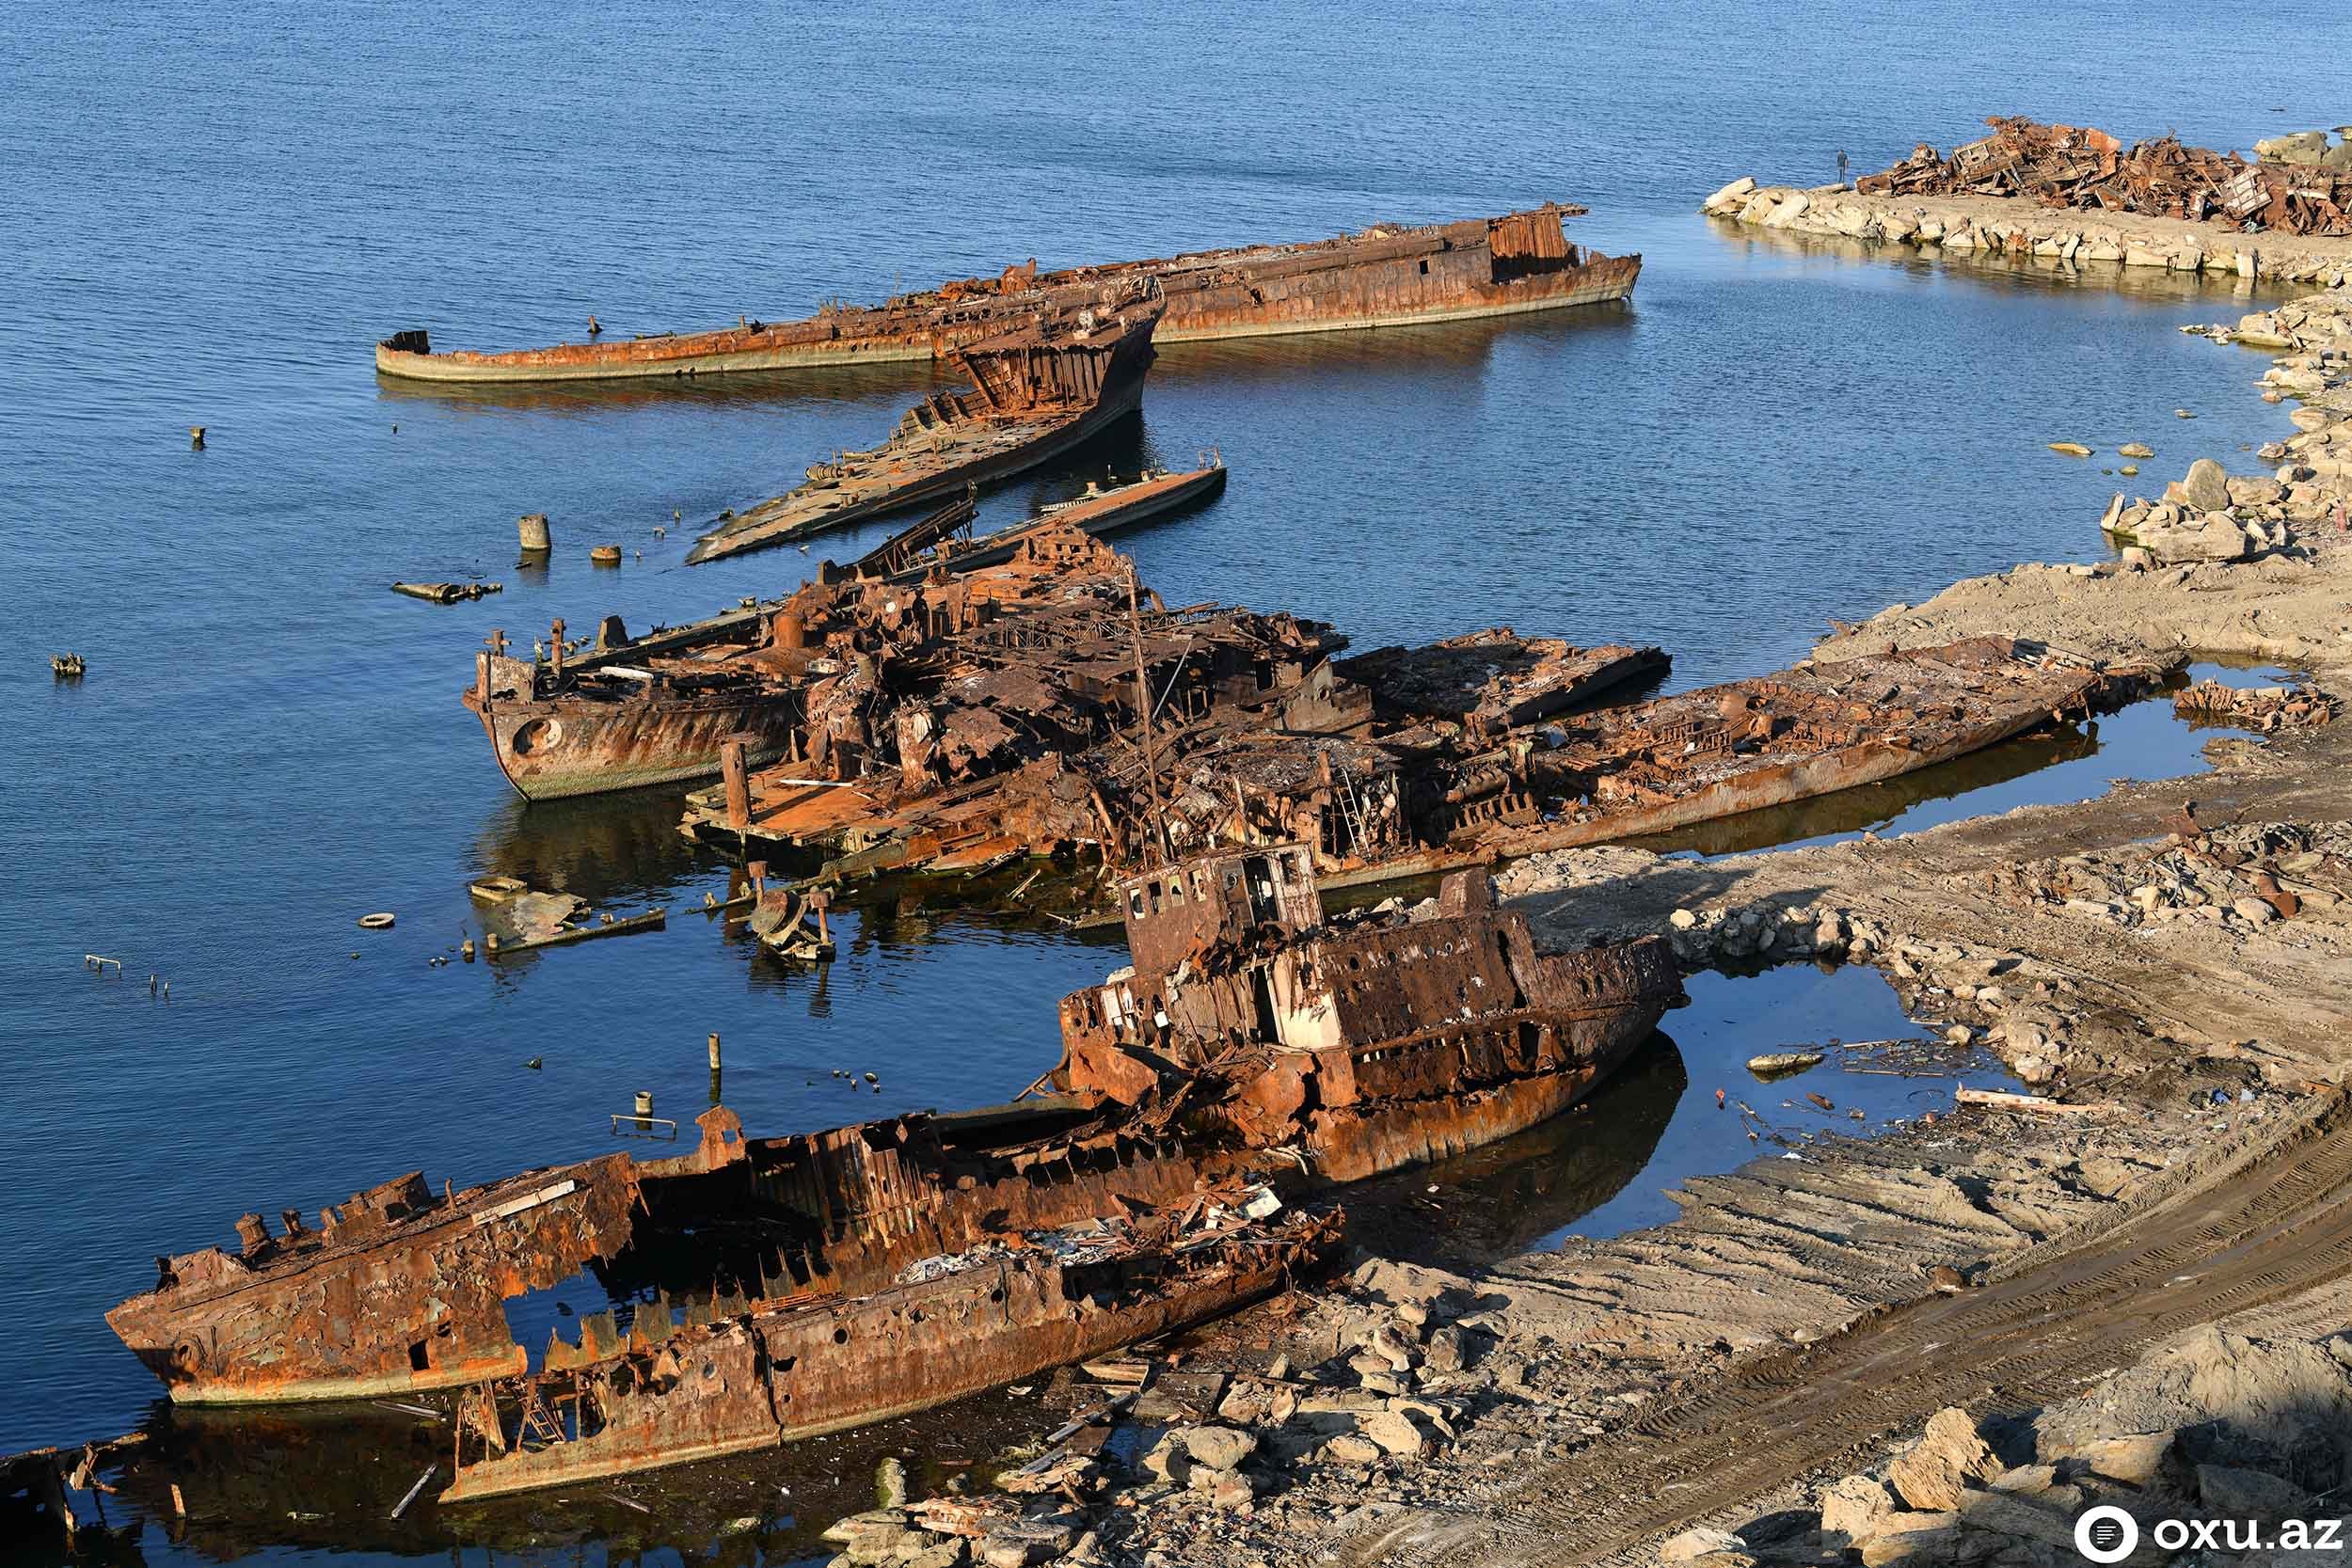 Саргассово море остров погибших кораблей